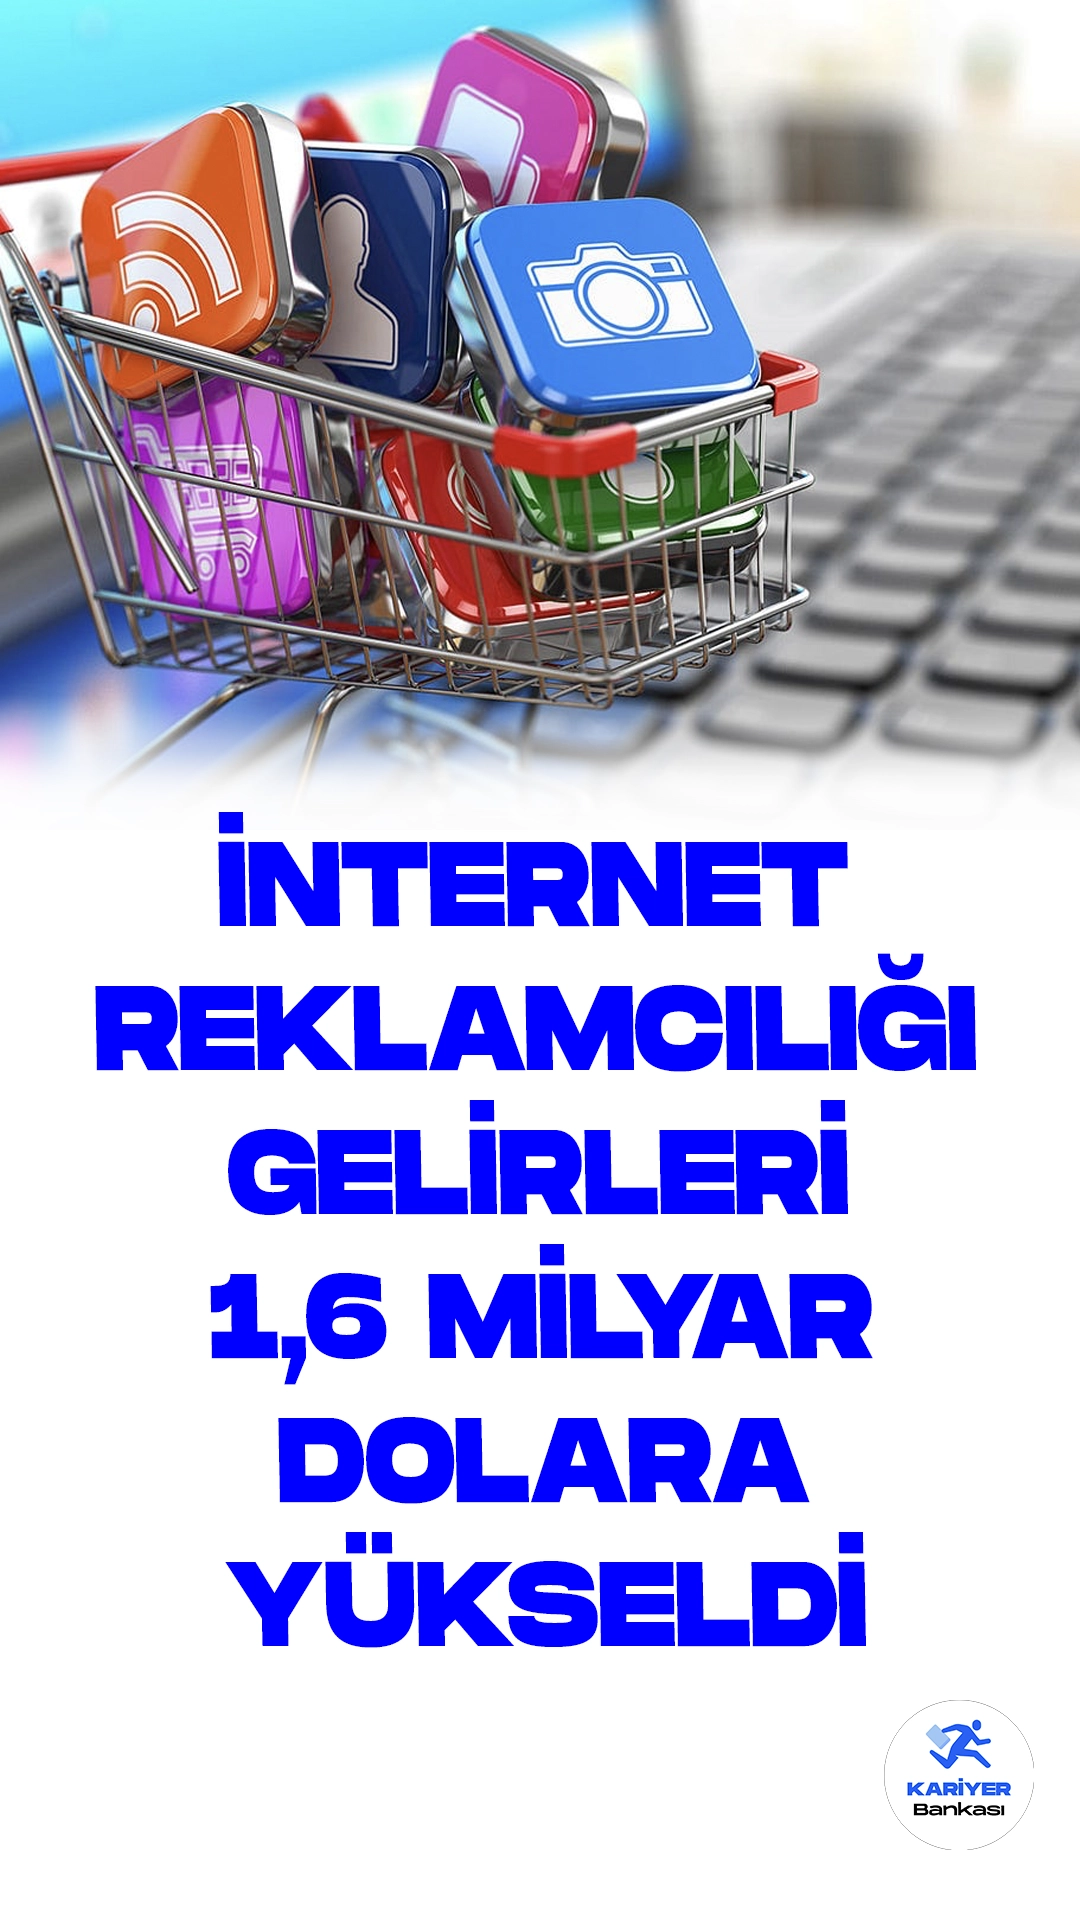 Türkiye İnternet Reklam Pazarı 2022'de 1,6 Milyar Dolara Ulaştı.Türkiye'nin internet reklamcılığı pazarı, 2022'de 1,6 milyar dolarlık toplam gelire ulaştı ve önümüzdeki yıllarda büyümeye devam ediyor. 2027'ye kadar yüzde 8,6 yıllık bileşik büyüme oranıyla artması beklenerek 2,3 milyar dolara ulaşması öngörülüyor.